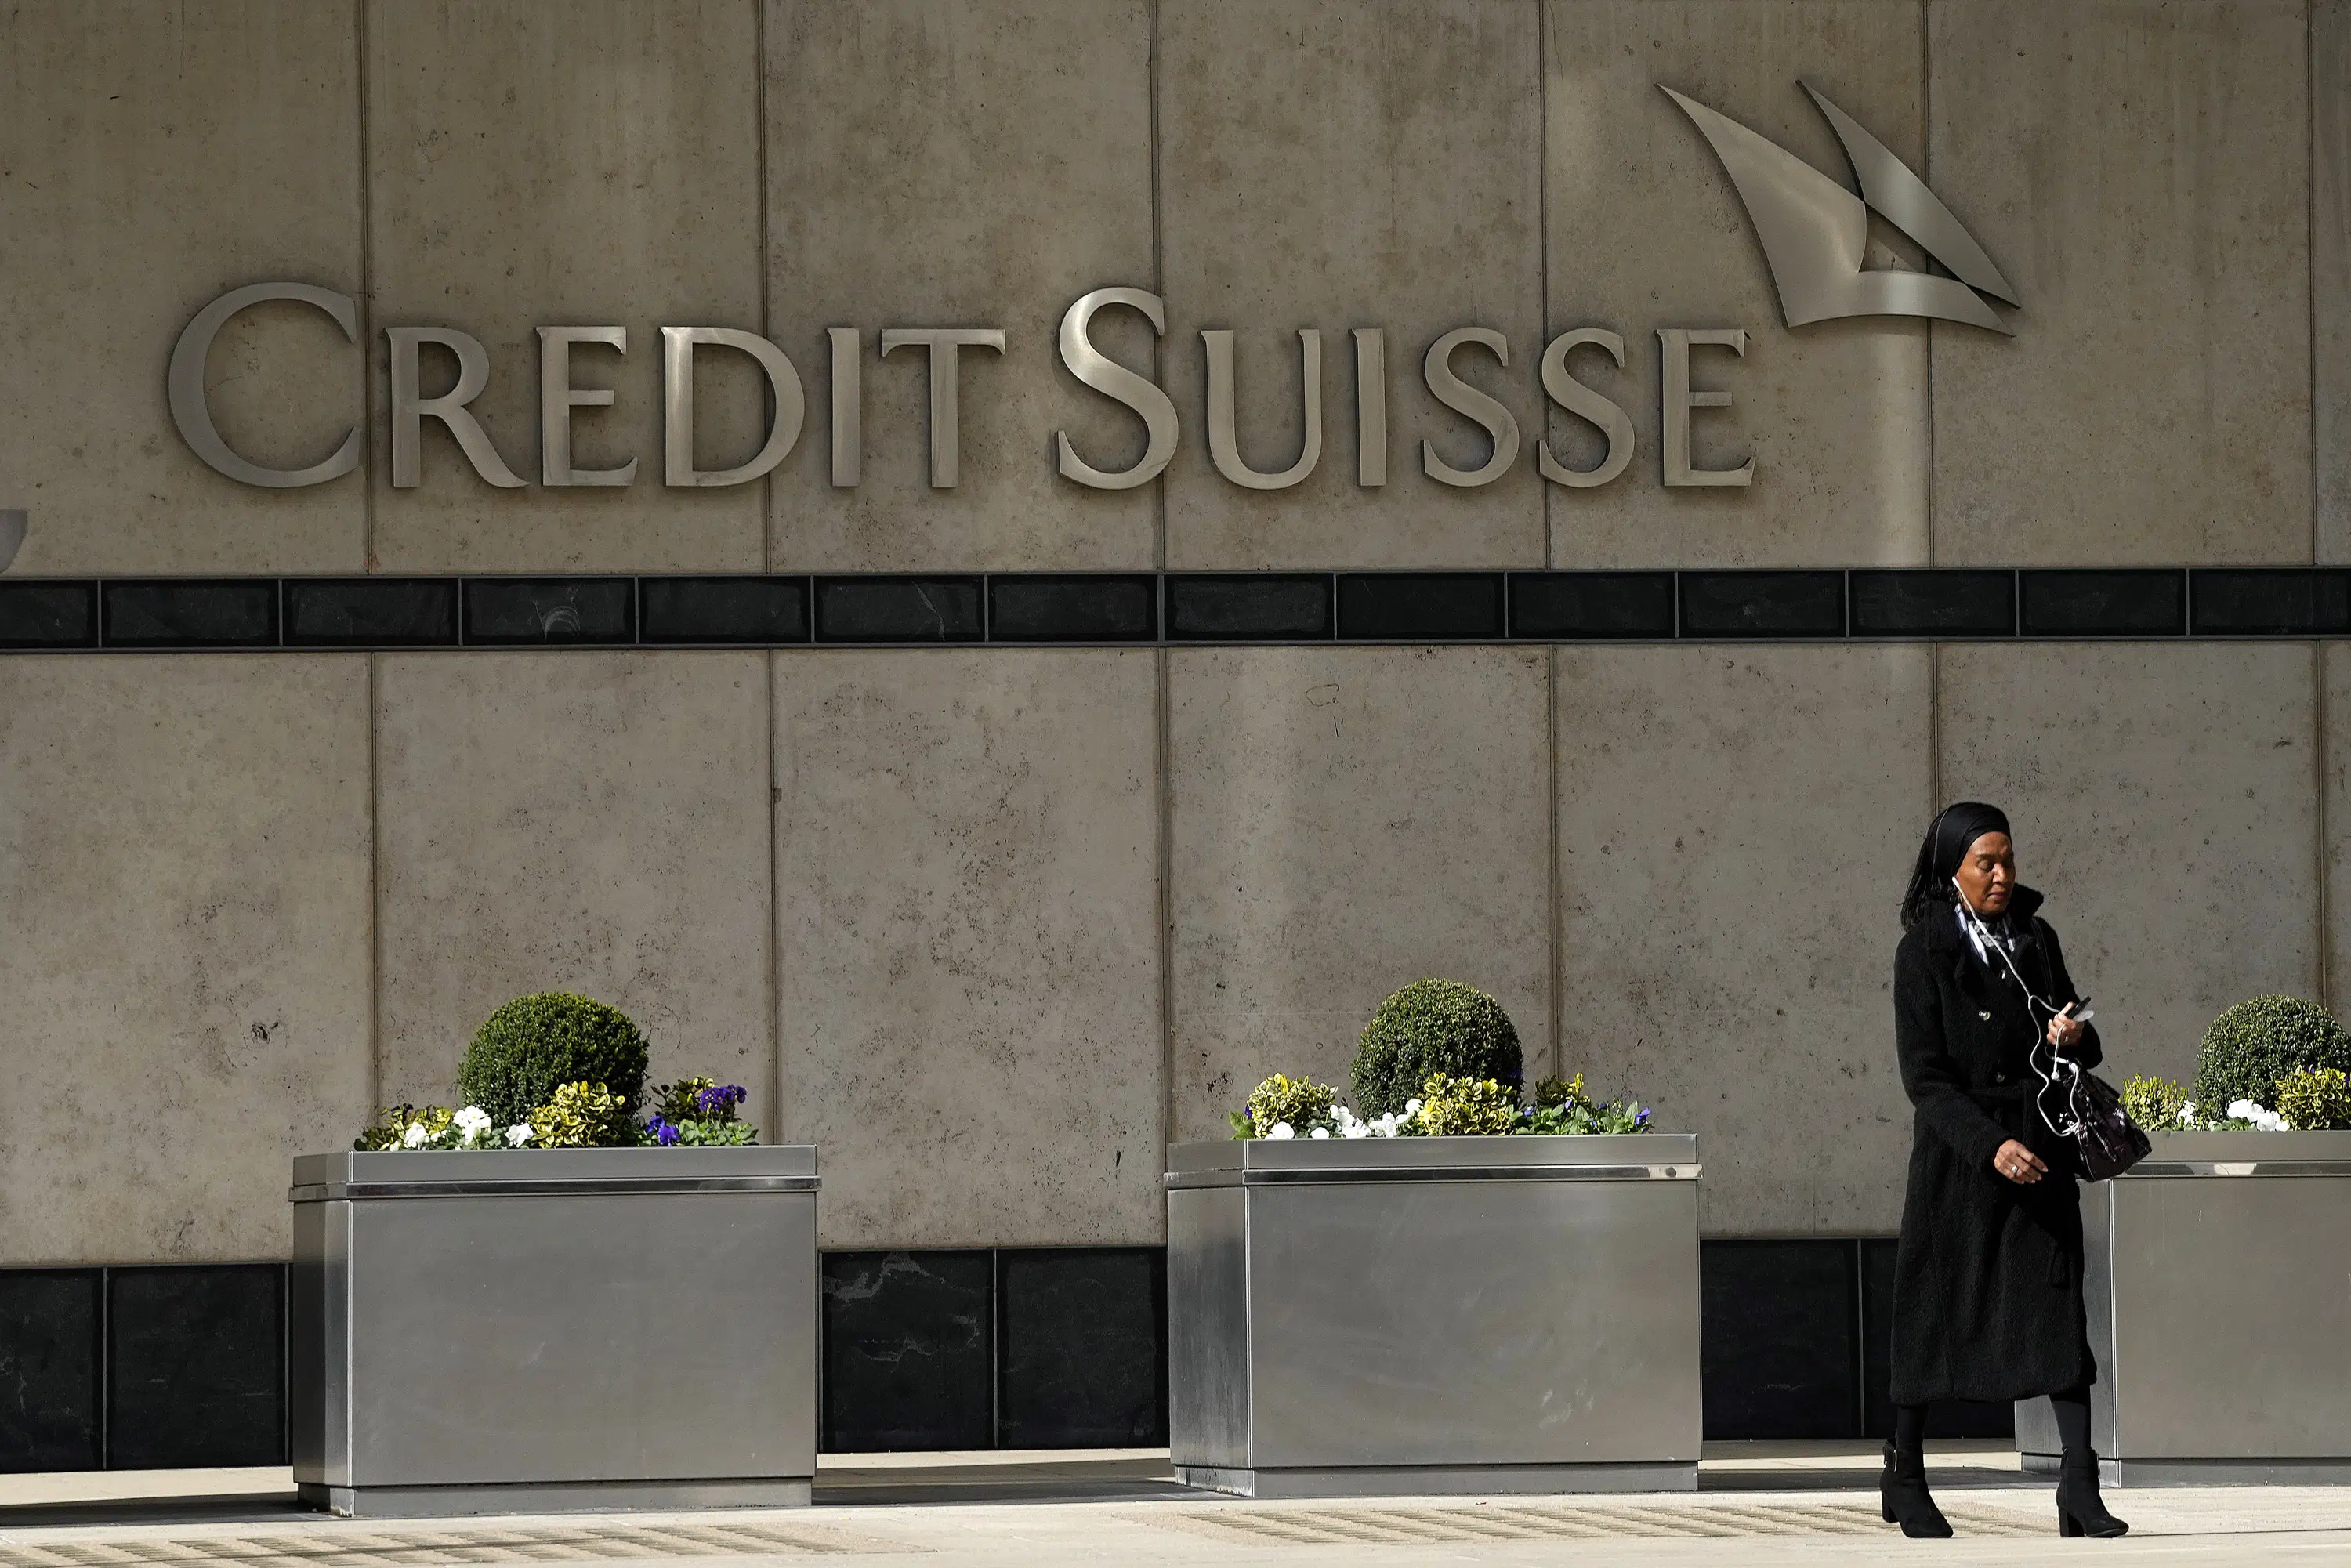 Het aandeel Credit Suisse steeg nadat de centrale bank een reddingsboei had geboden